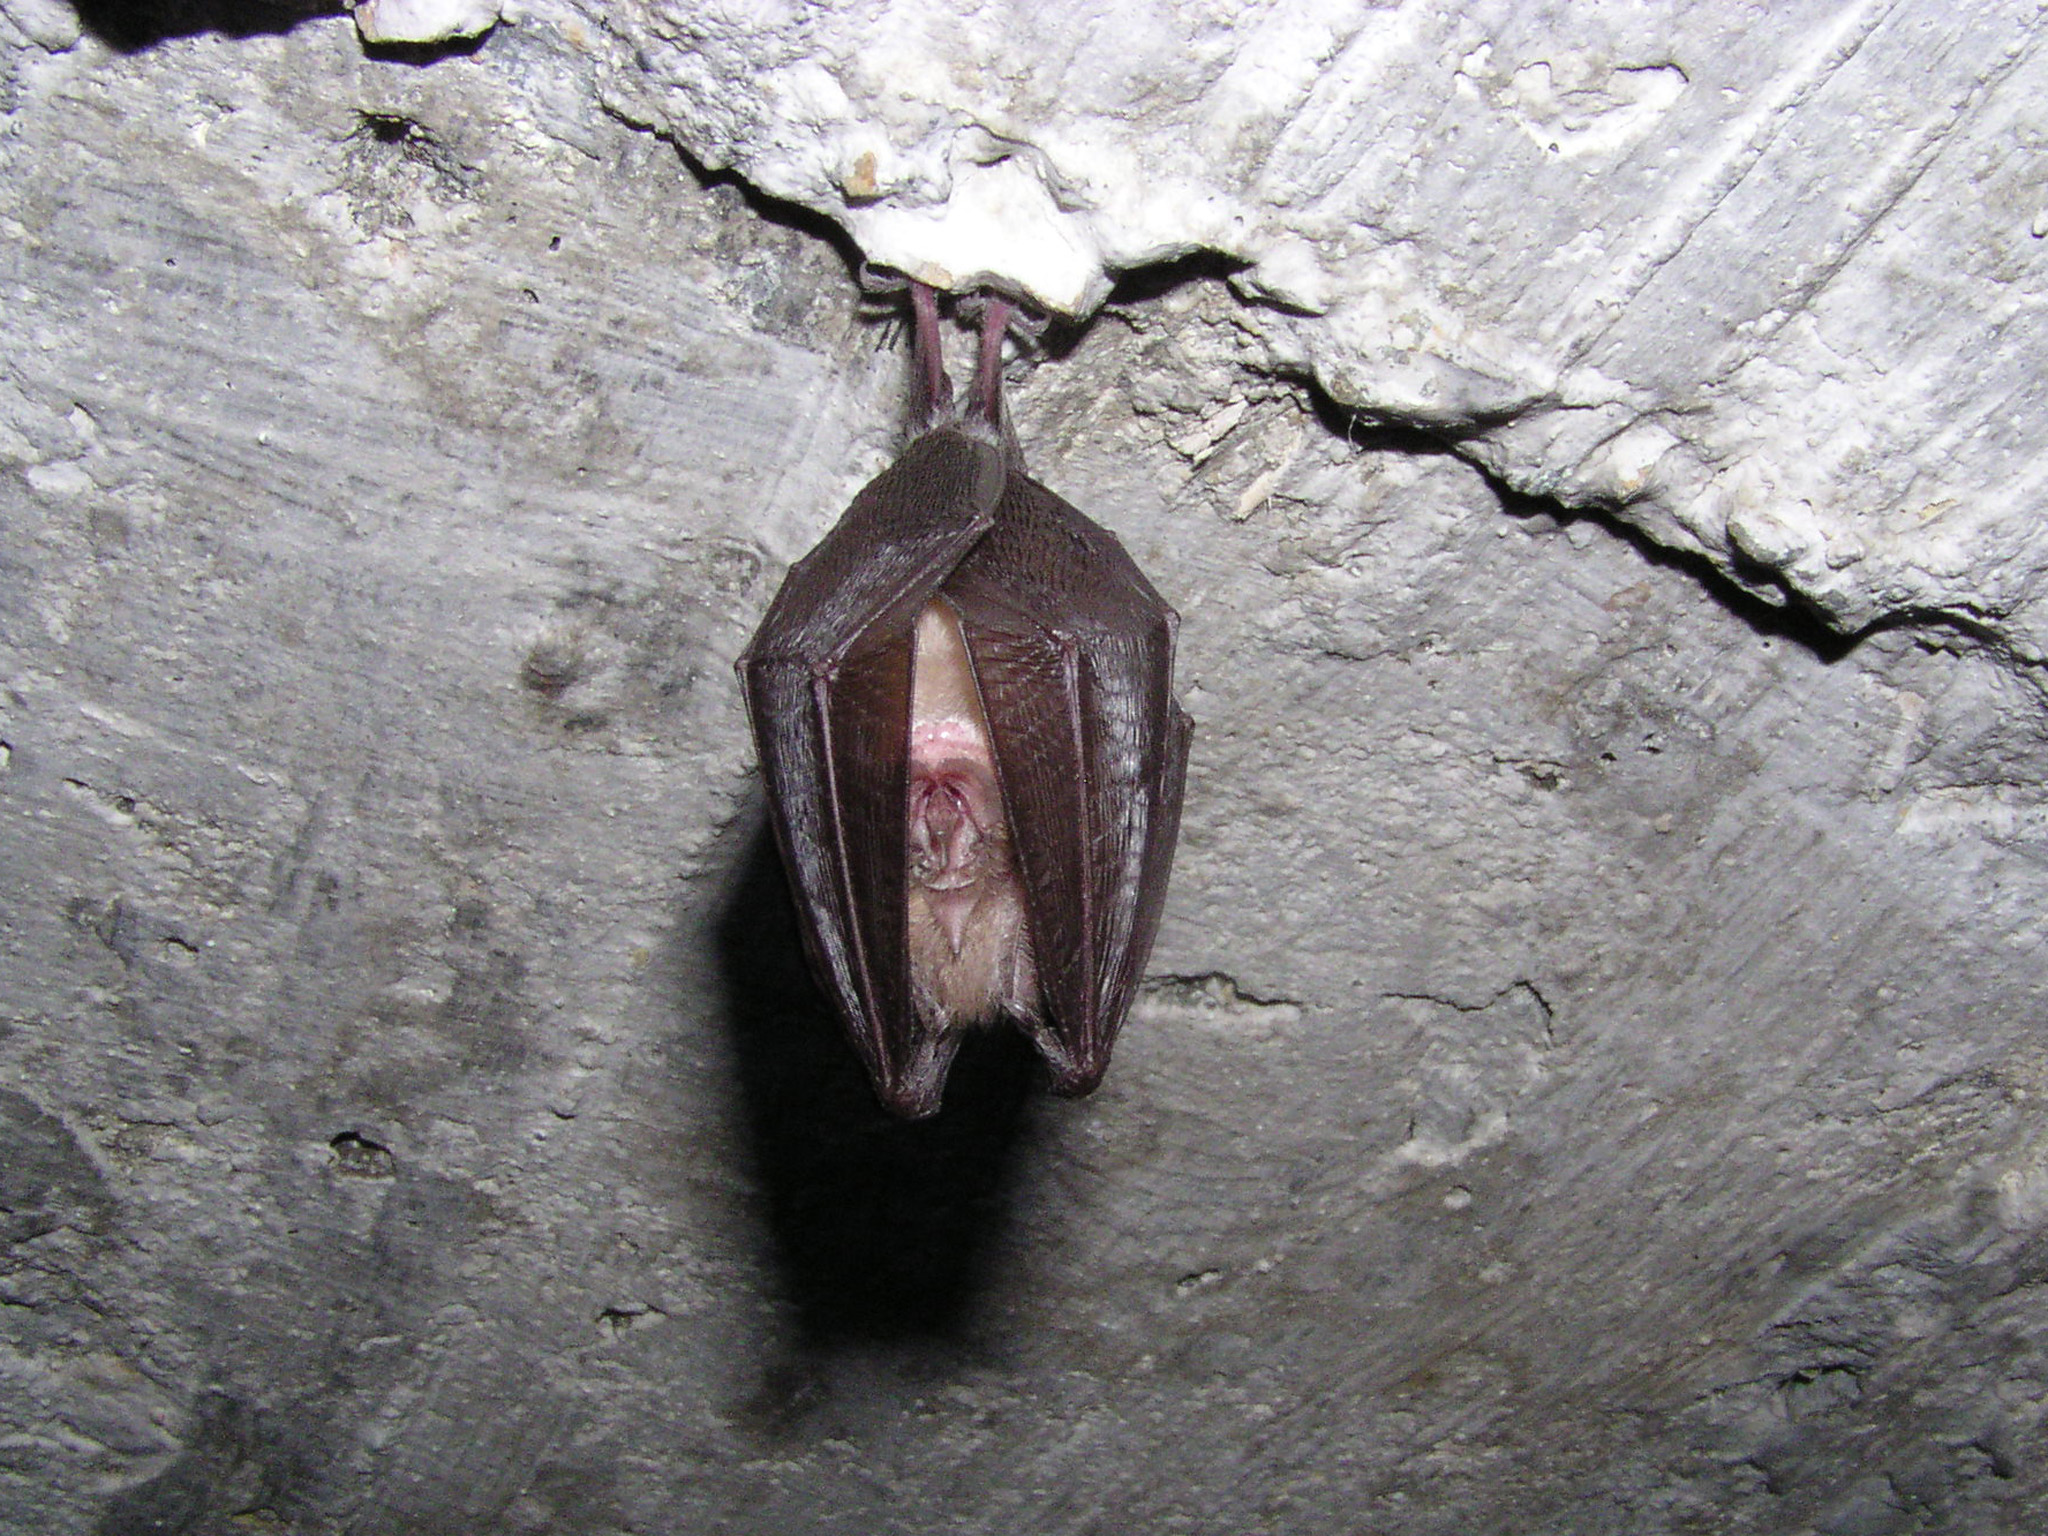 Lesser horseshoe bat [photo courtesy of Mike Castle]